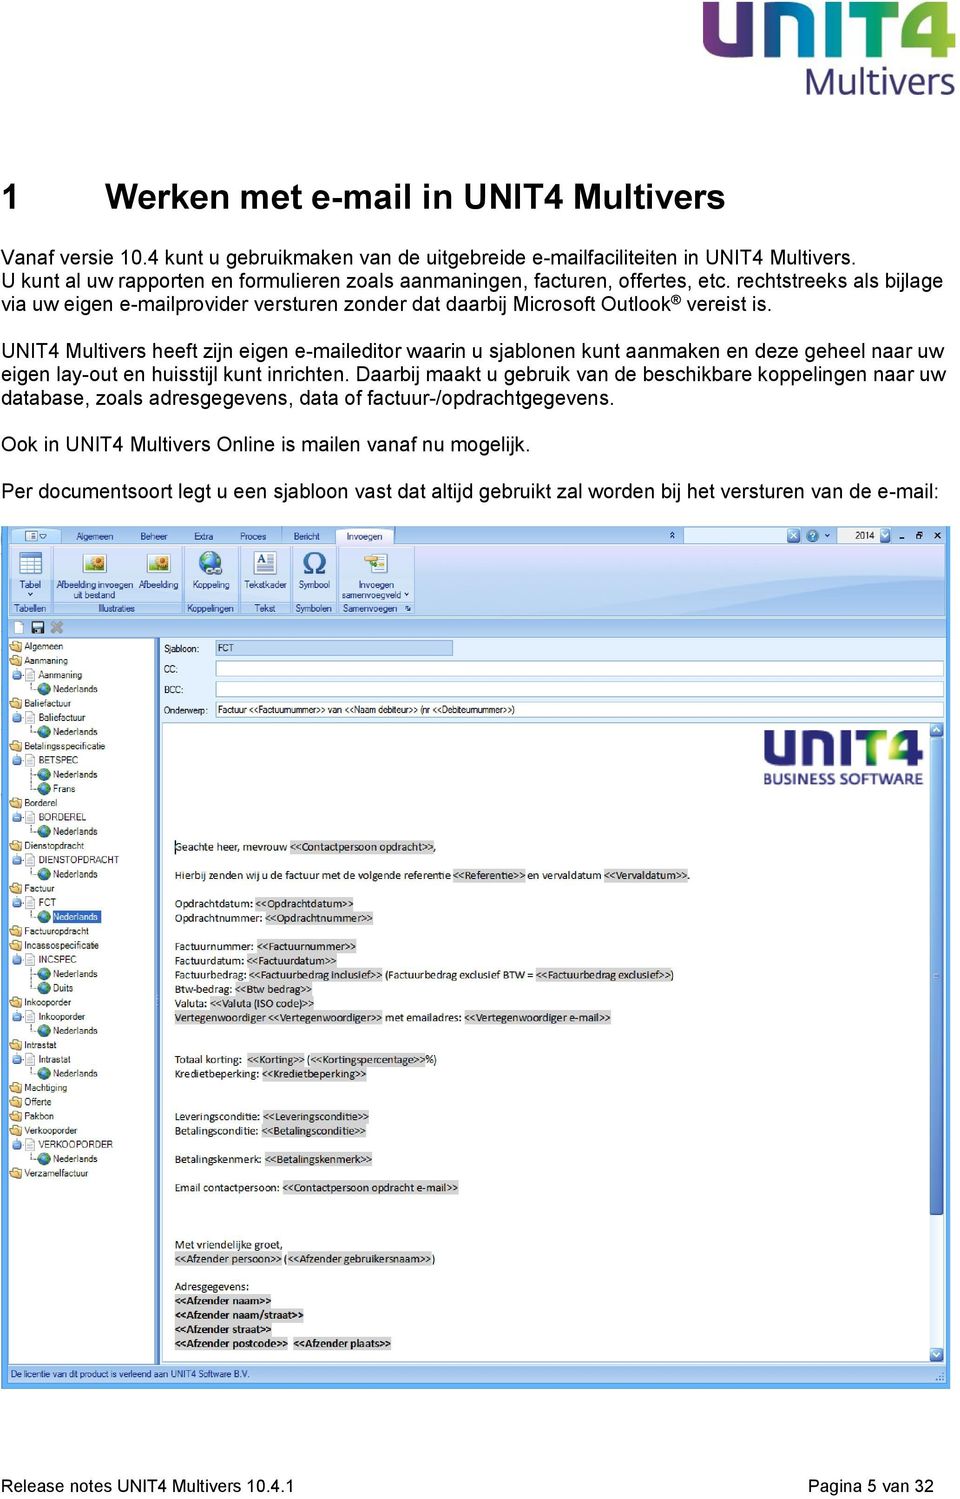 UNIT4 Multivers heeft zijn eigen e-maileditor waarin u sjablonen kunt aanmaken en deze geheel naar uw eigen lay-out en huisstijl kunt inrichten.